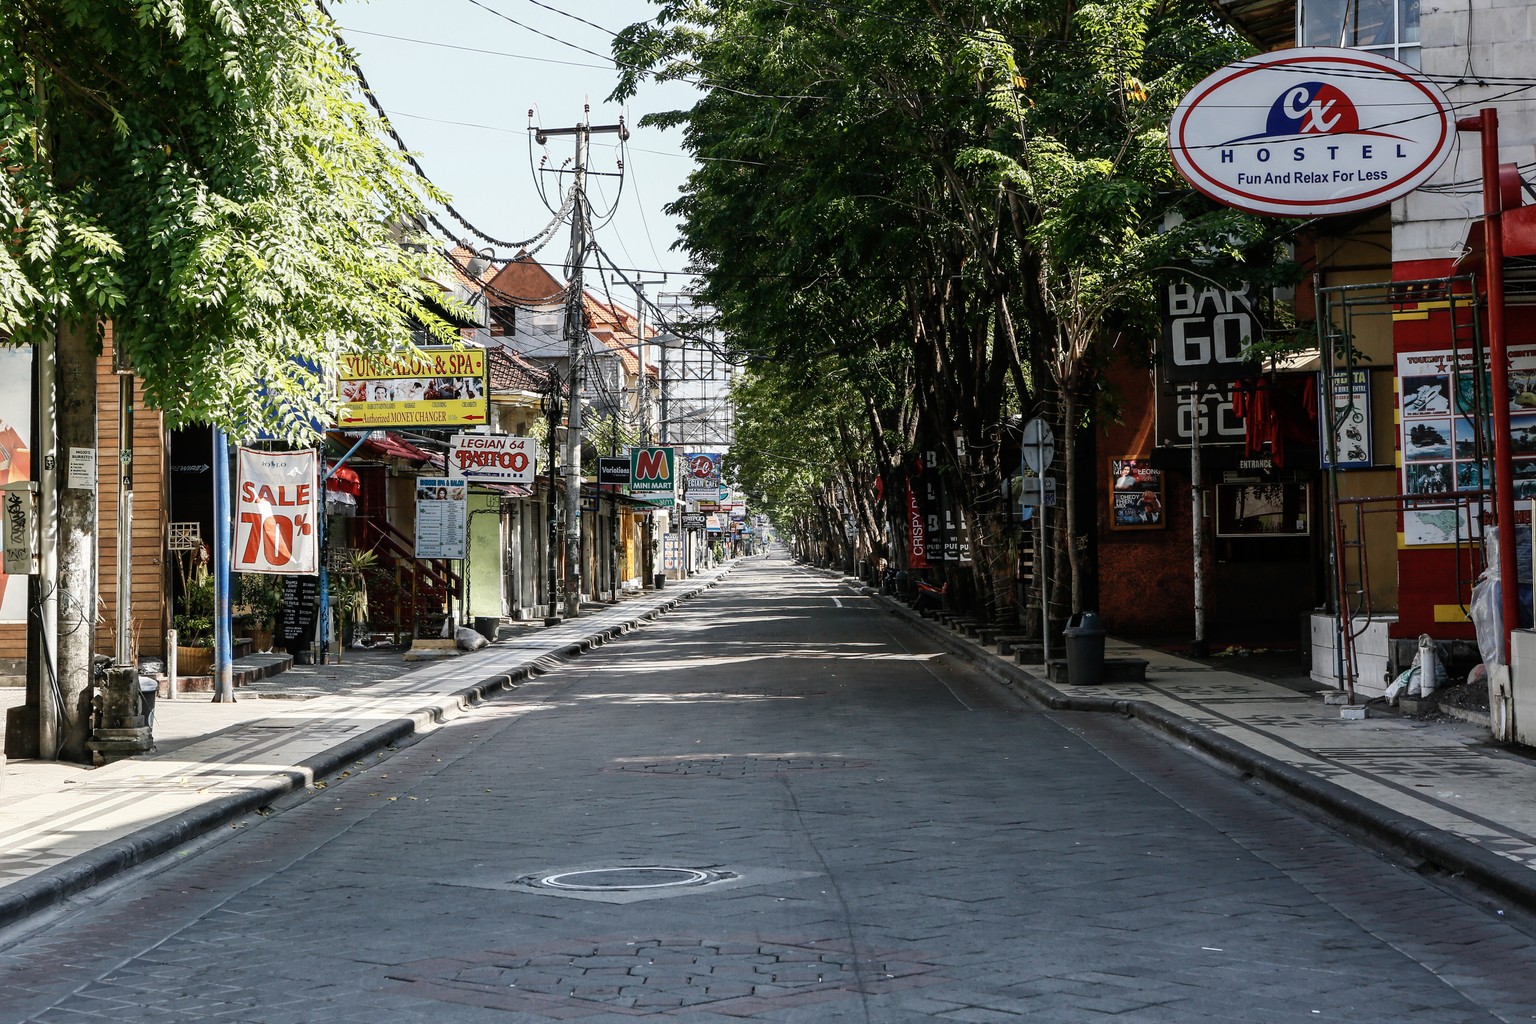 Leere Strassen in Bali: Sehen so in hundert Jahren europäische Länder aus?